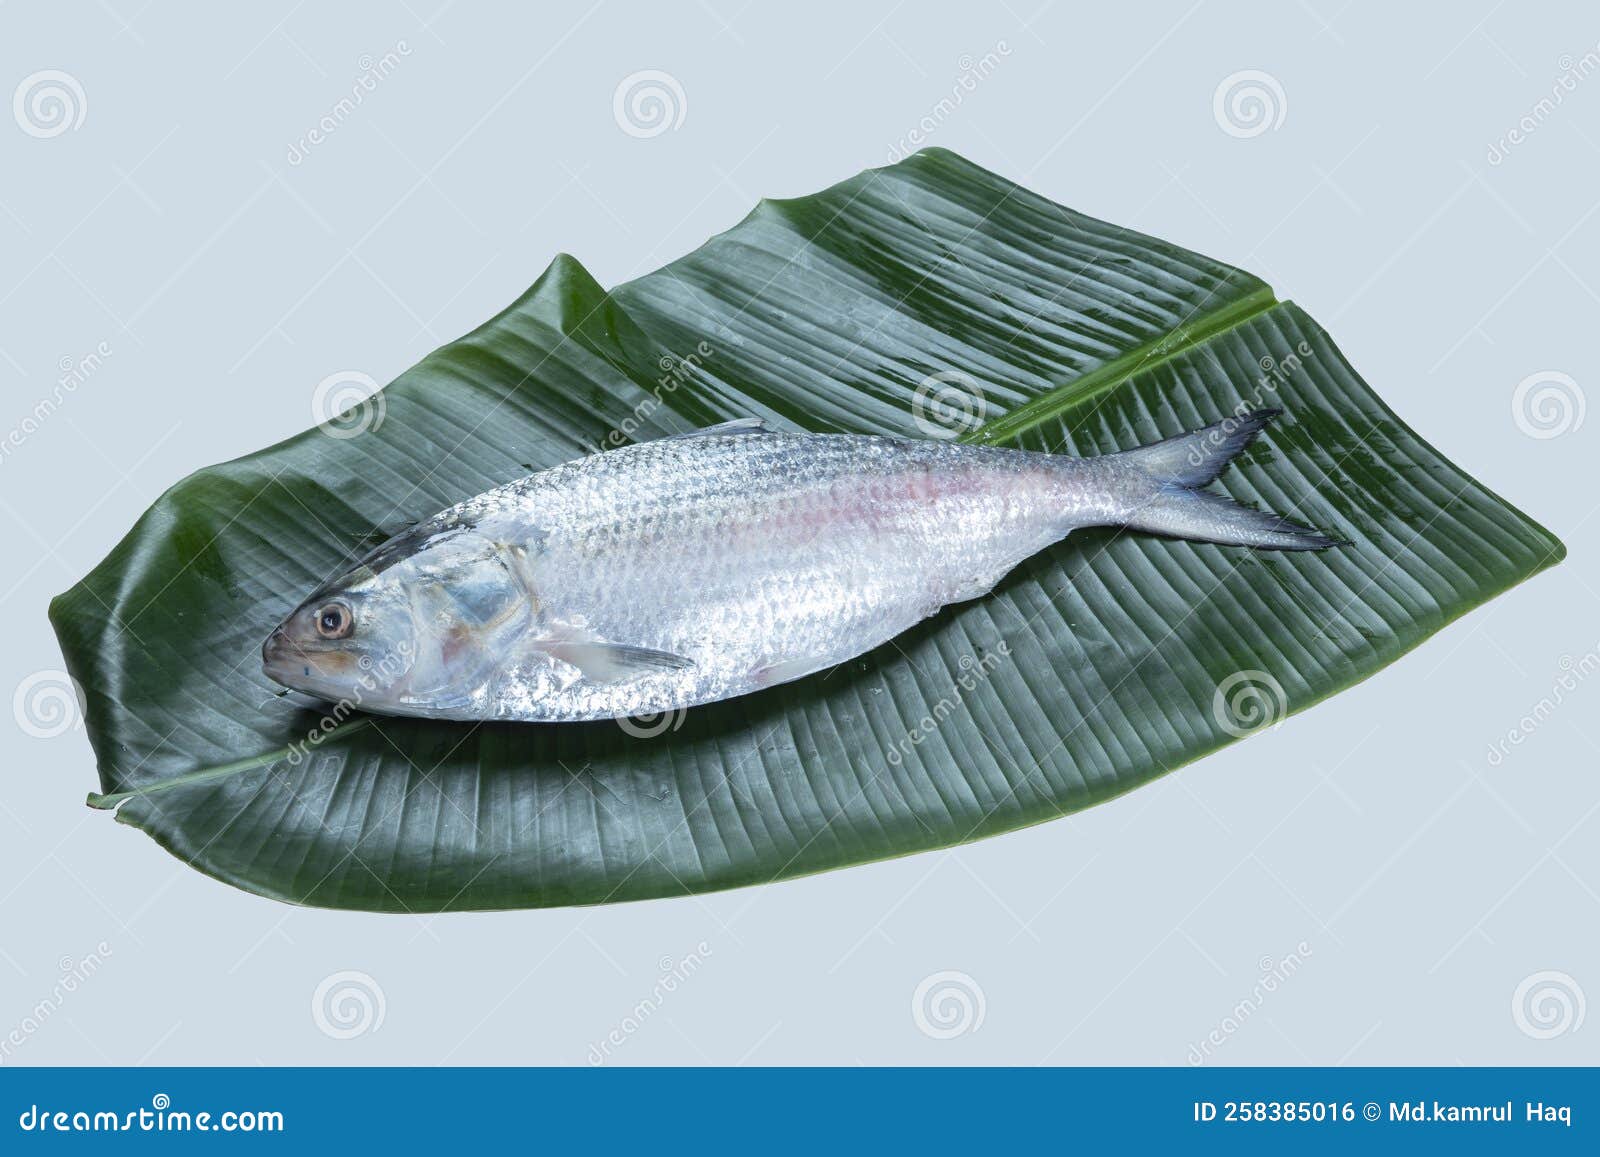 Boishakh Panta Ilish National Fish of Bangladesh Hilsafish Ilisha Terbuk  Hilsa Herring or Hilsa Shad Clupeidae Family on White Stock Photo - Image  of fresh, tropical: 258385016